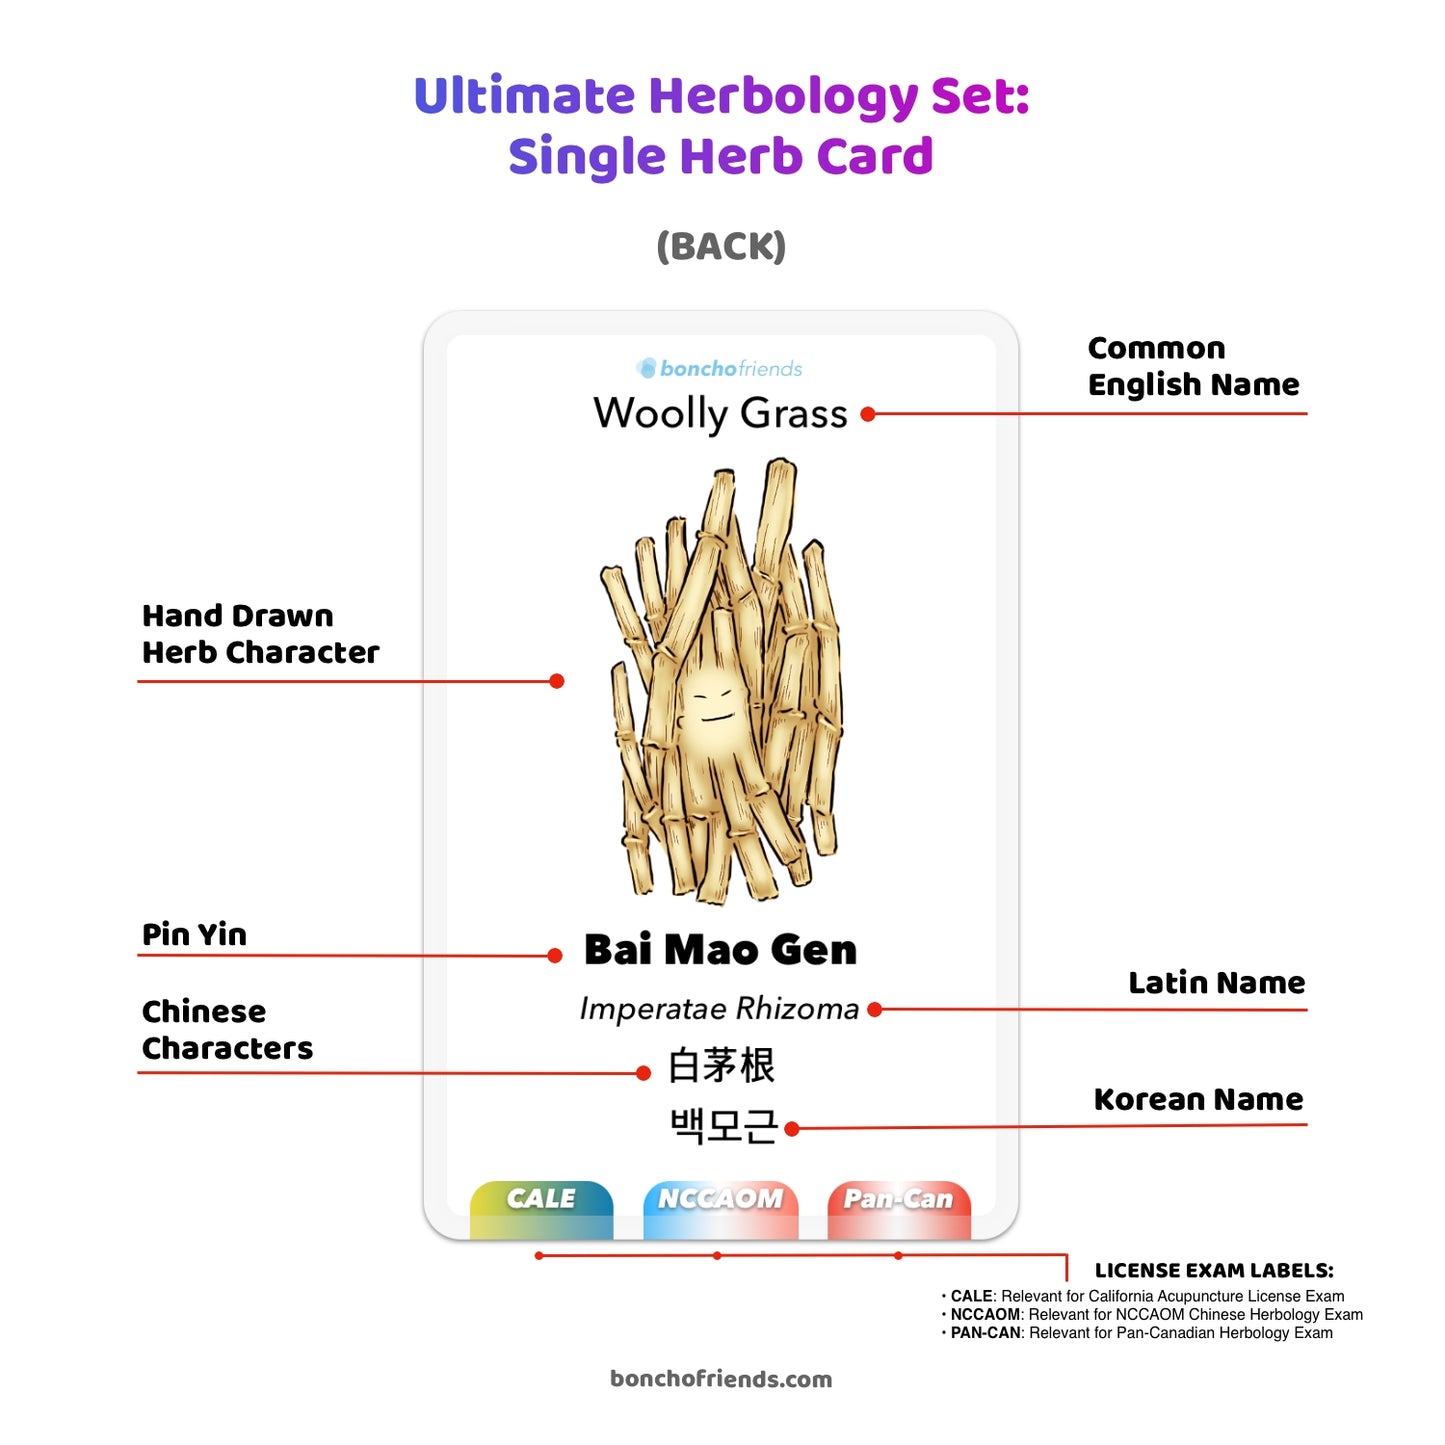 [PRE-ORDER] Ultimate Herbology Set Regular Size or Plus Size